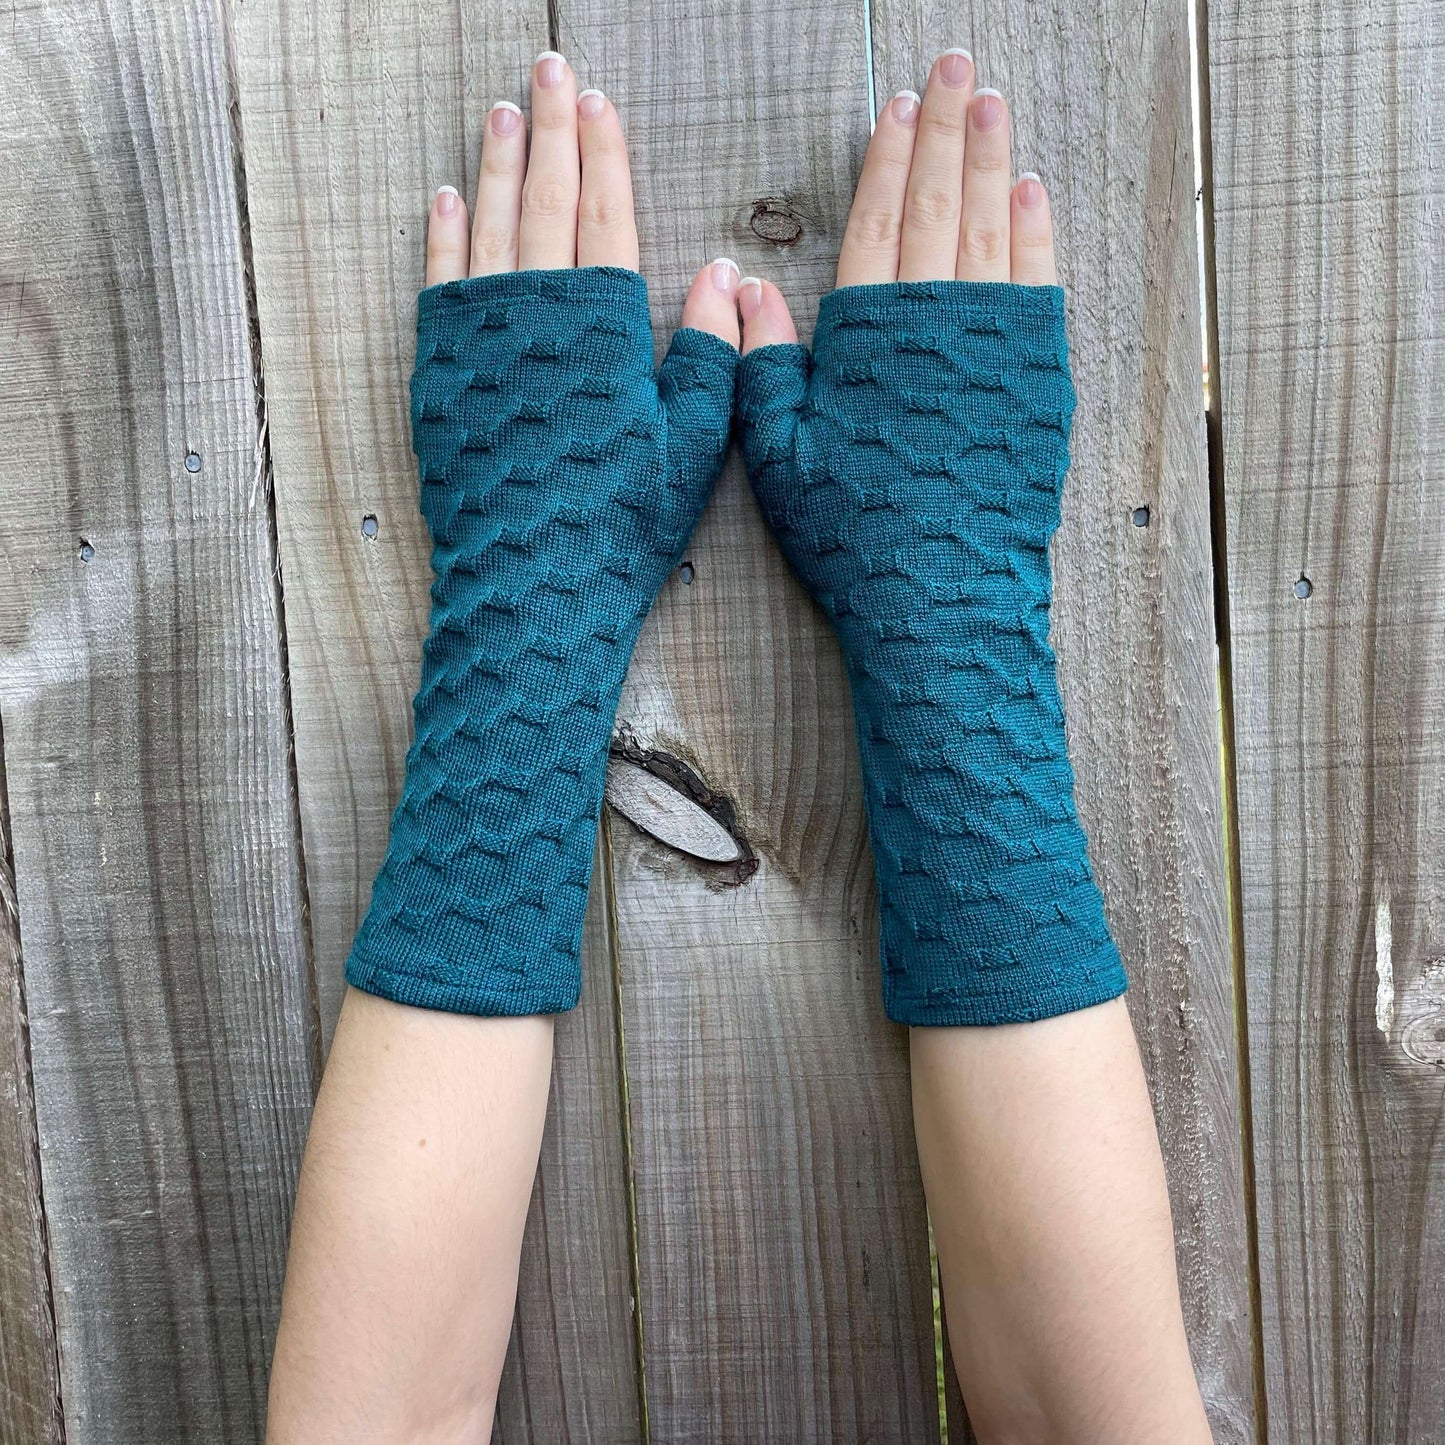 Fingerless merino gloves in teal textured knit.